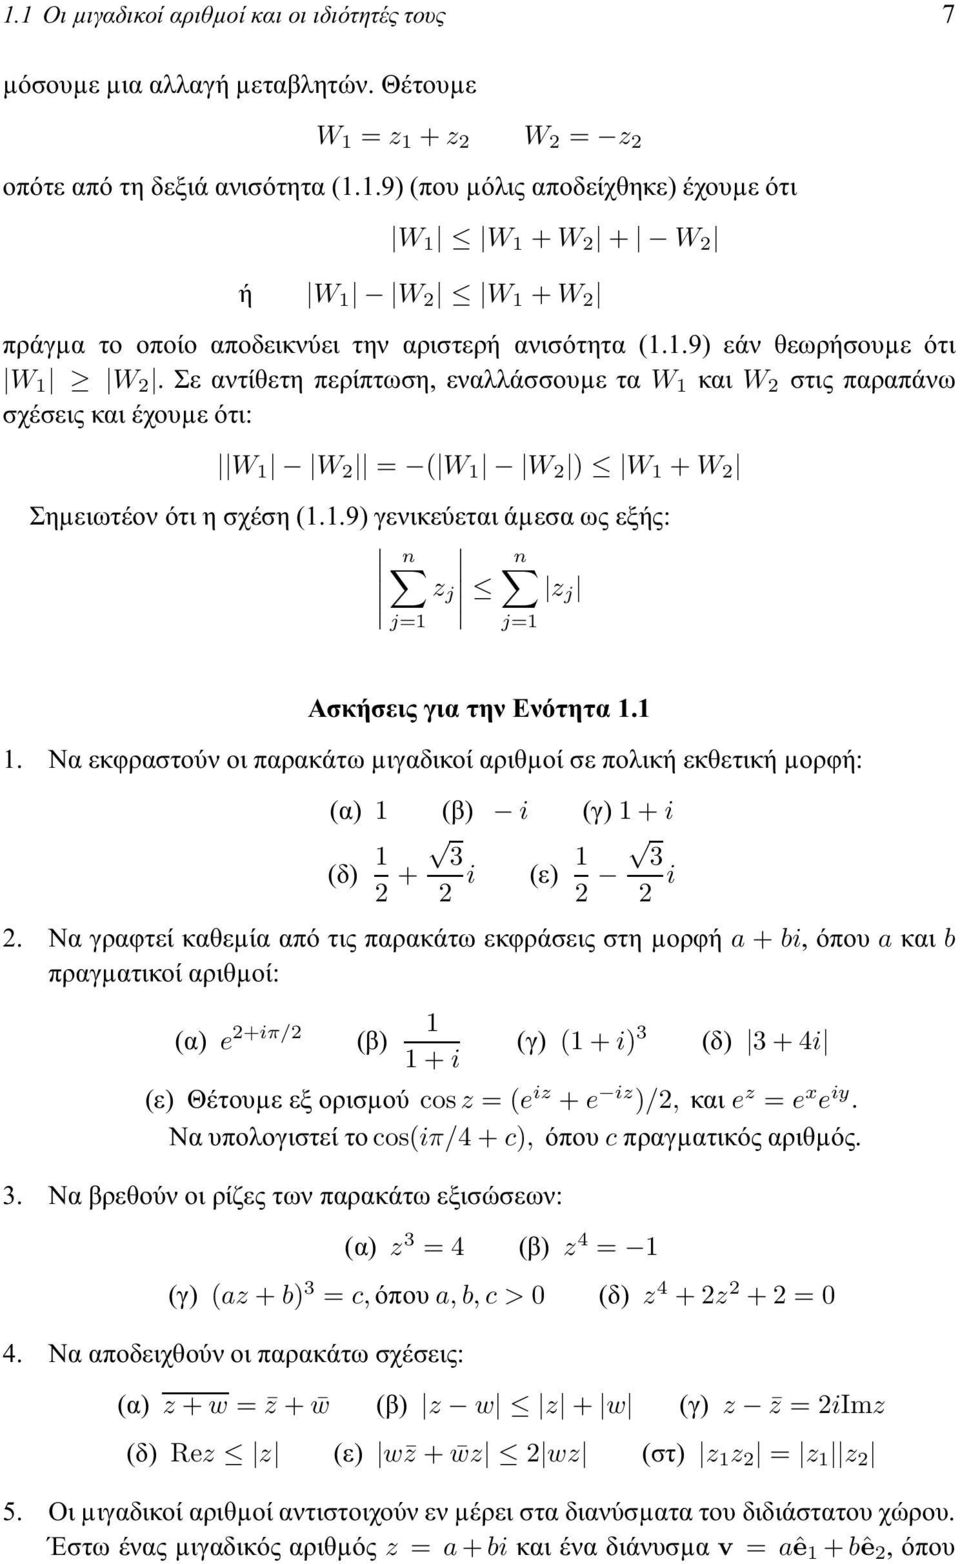 1 1. Να εκφραστούν οι παρακάτω µιγαδικοί αριθµοί σε πολική εκθετική µορφή: (α) 1 (β) i (γ) 1+i (δ) 1 3 2 + 2 i (ε) 1 3 2 2 i 2.